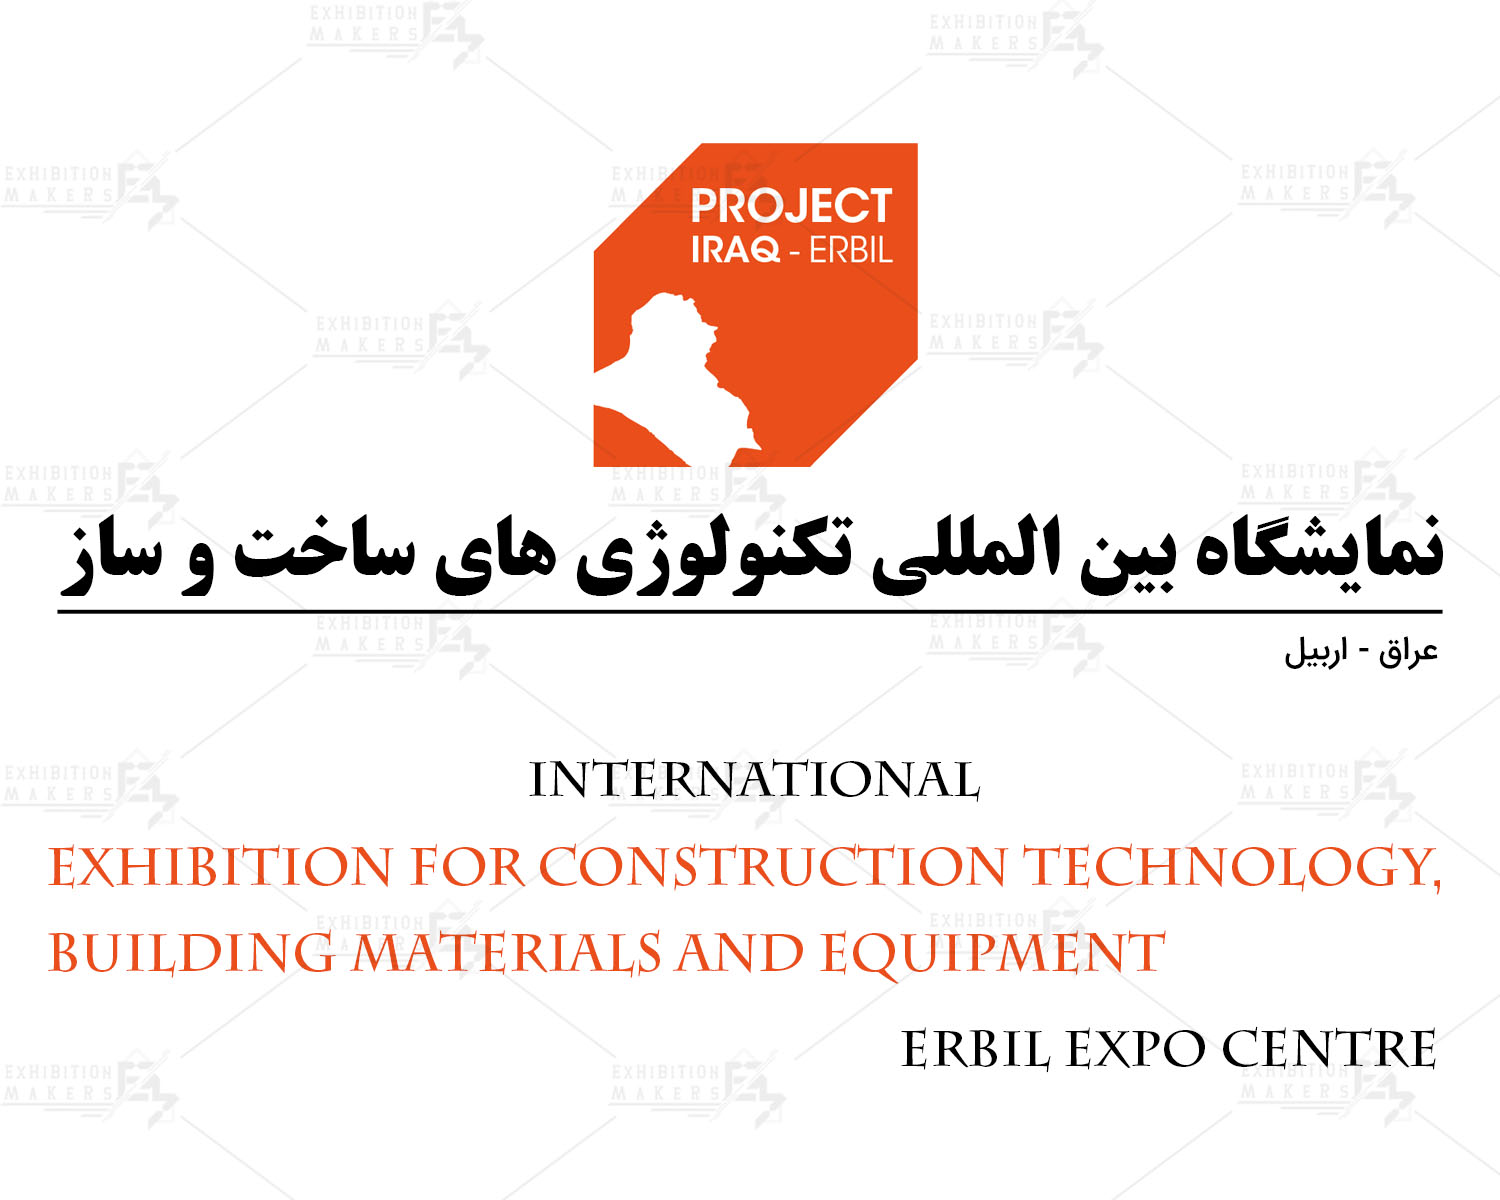 نمایشگاه بین المللی تکنولوژی های ساخت و ساز اربیل عراق